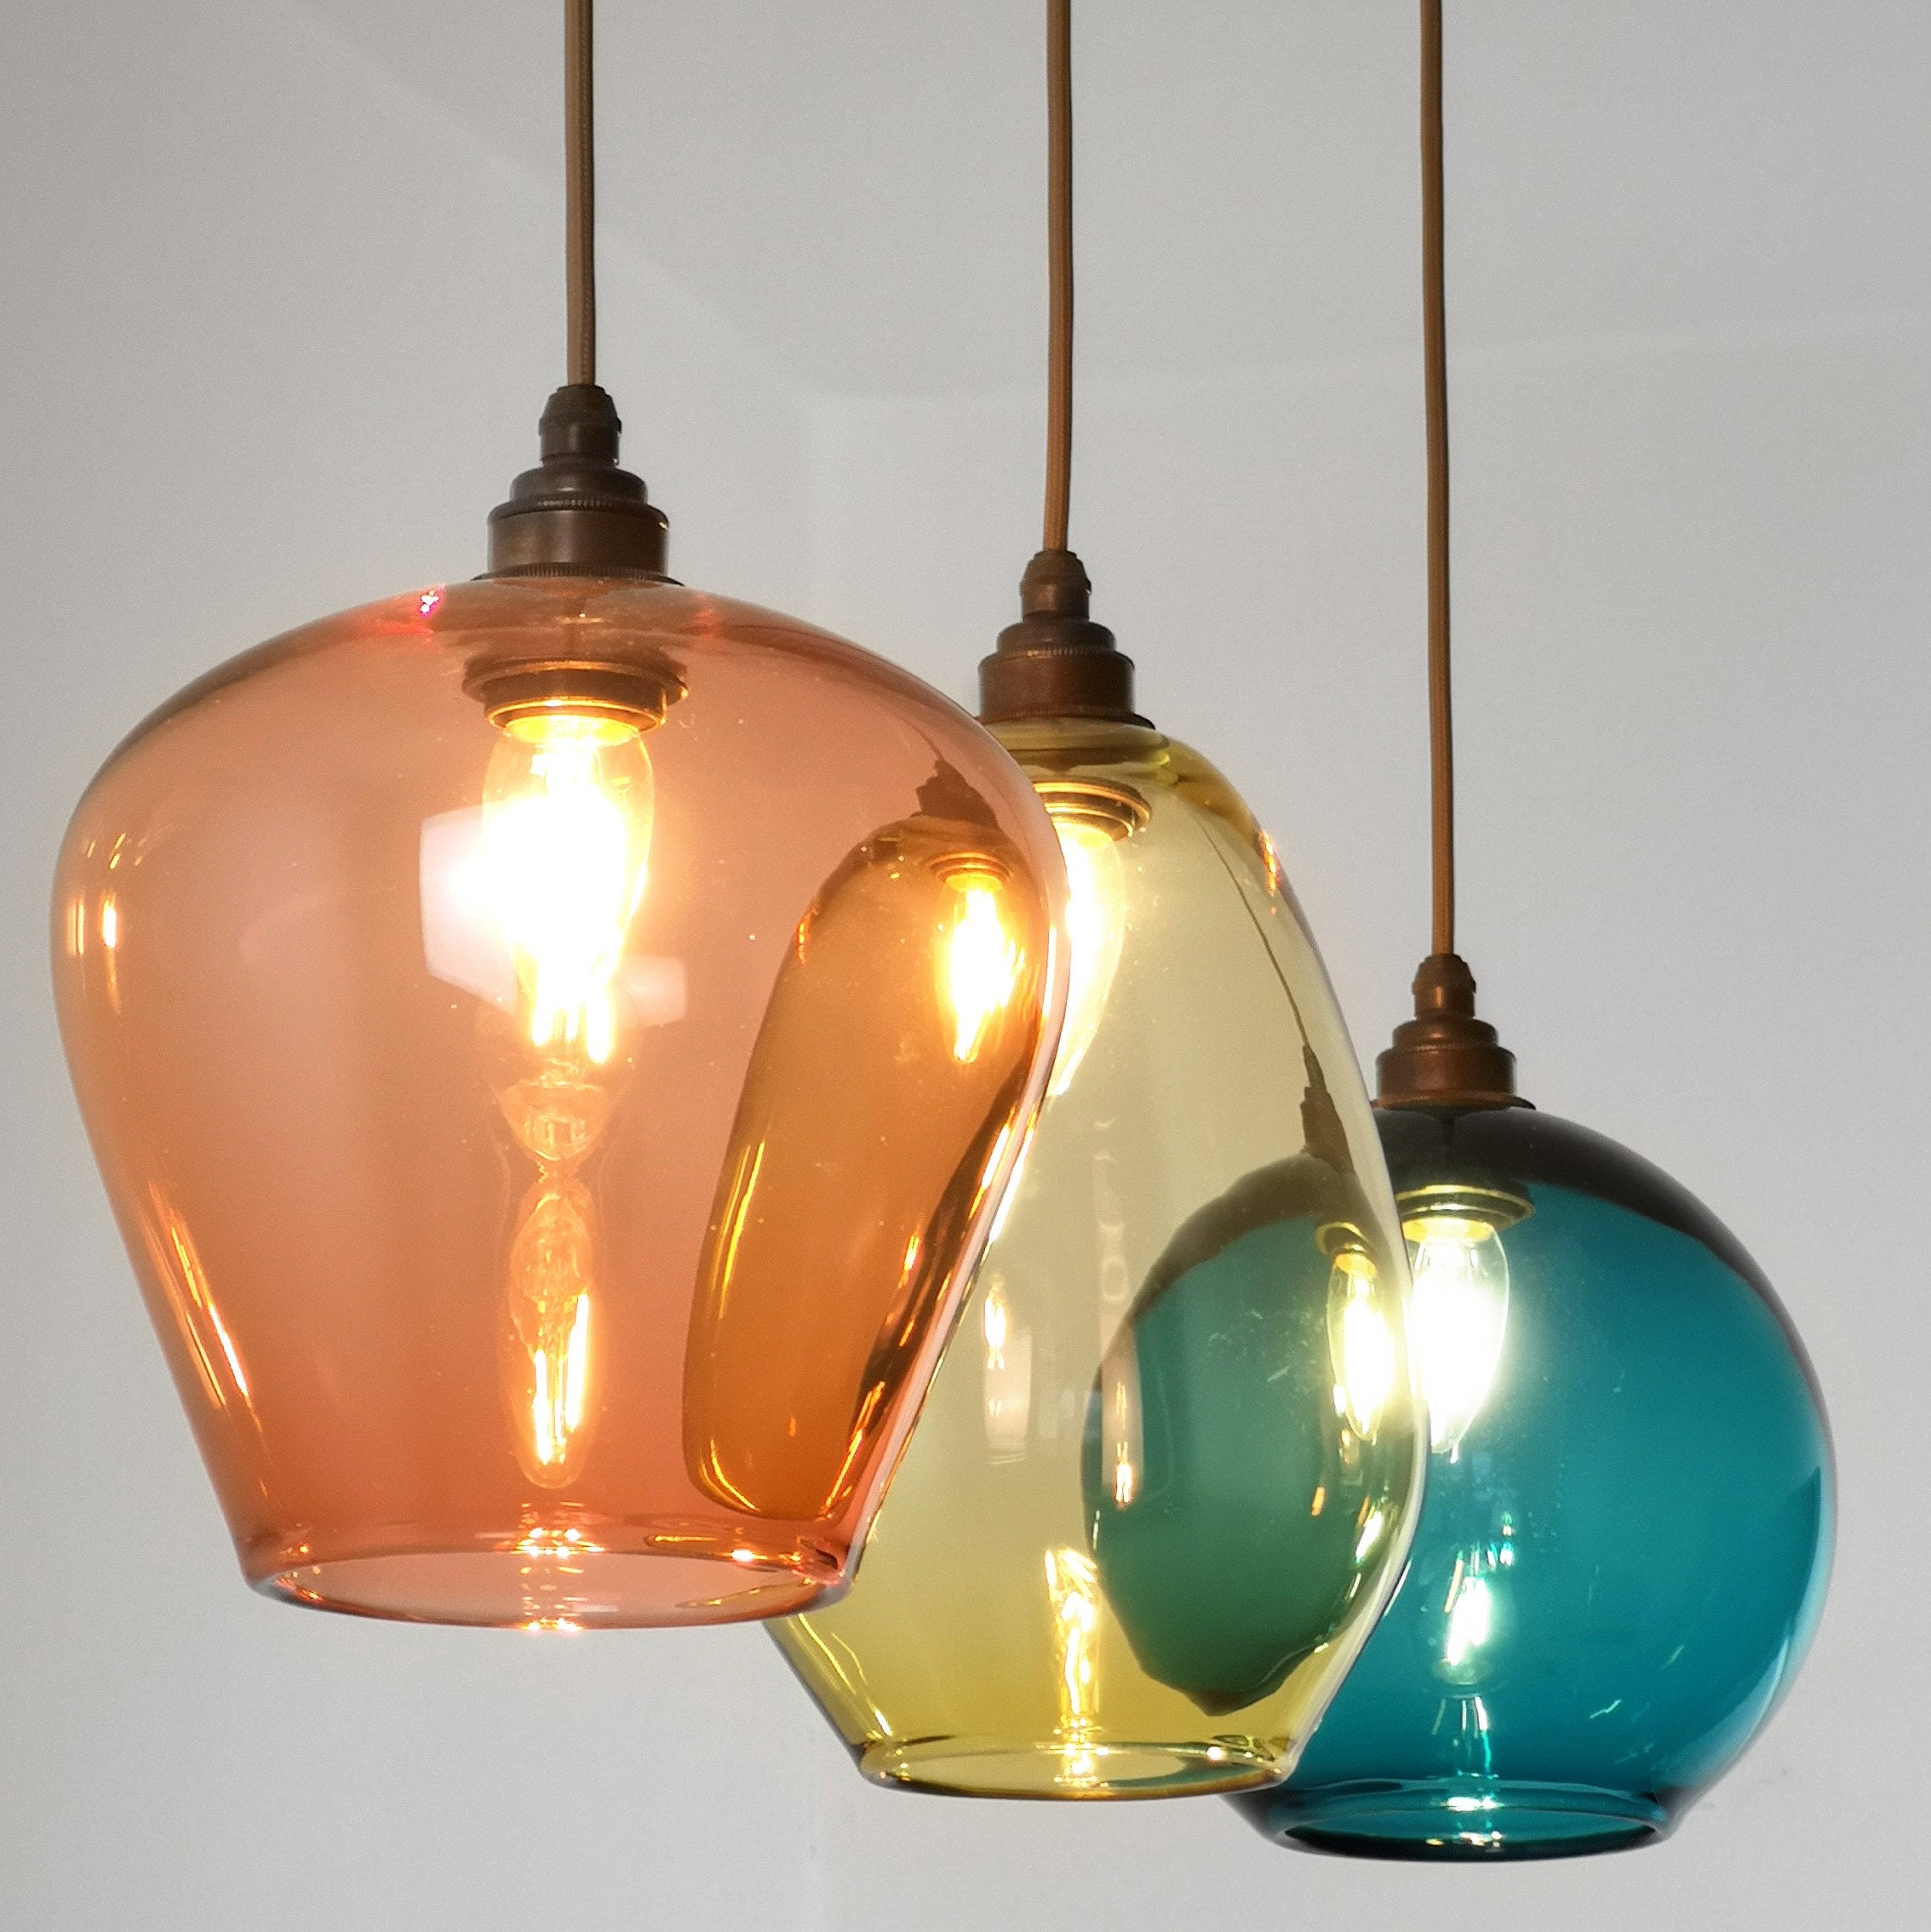 Coloured Glass Pendant Lights. Hand Glass Pendants. - Etsy Denmark